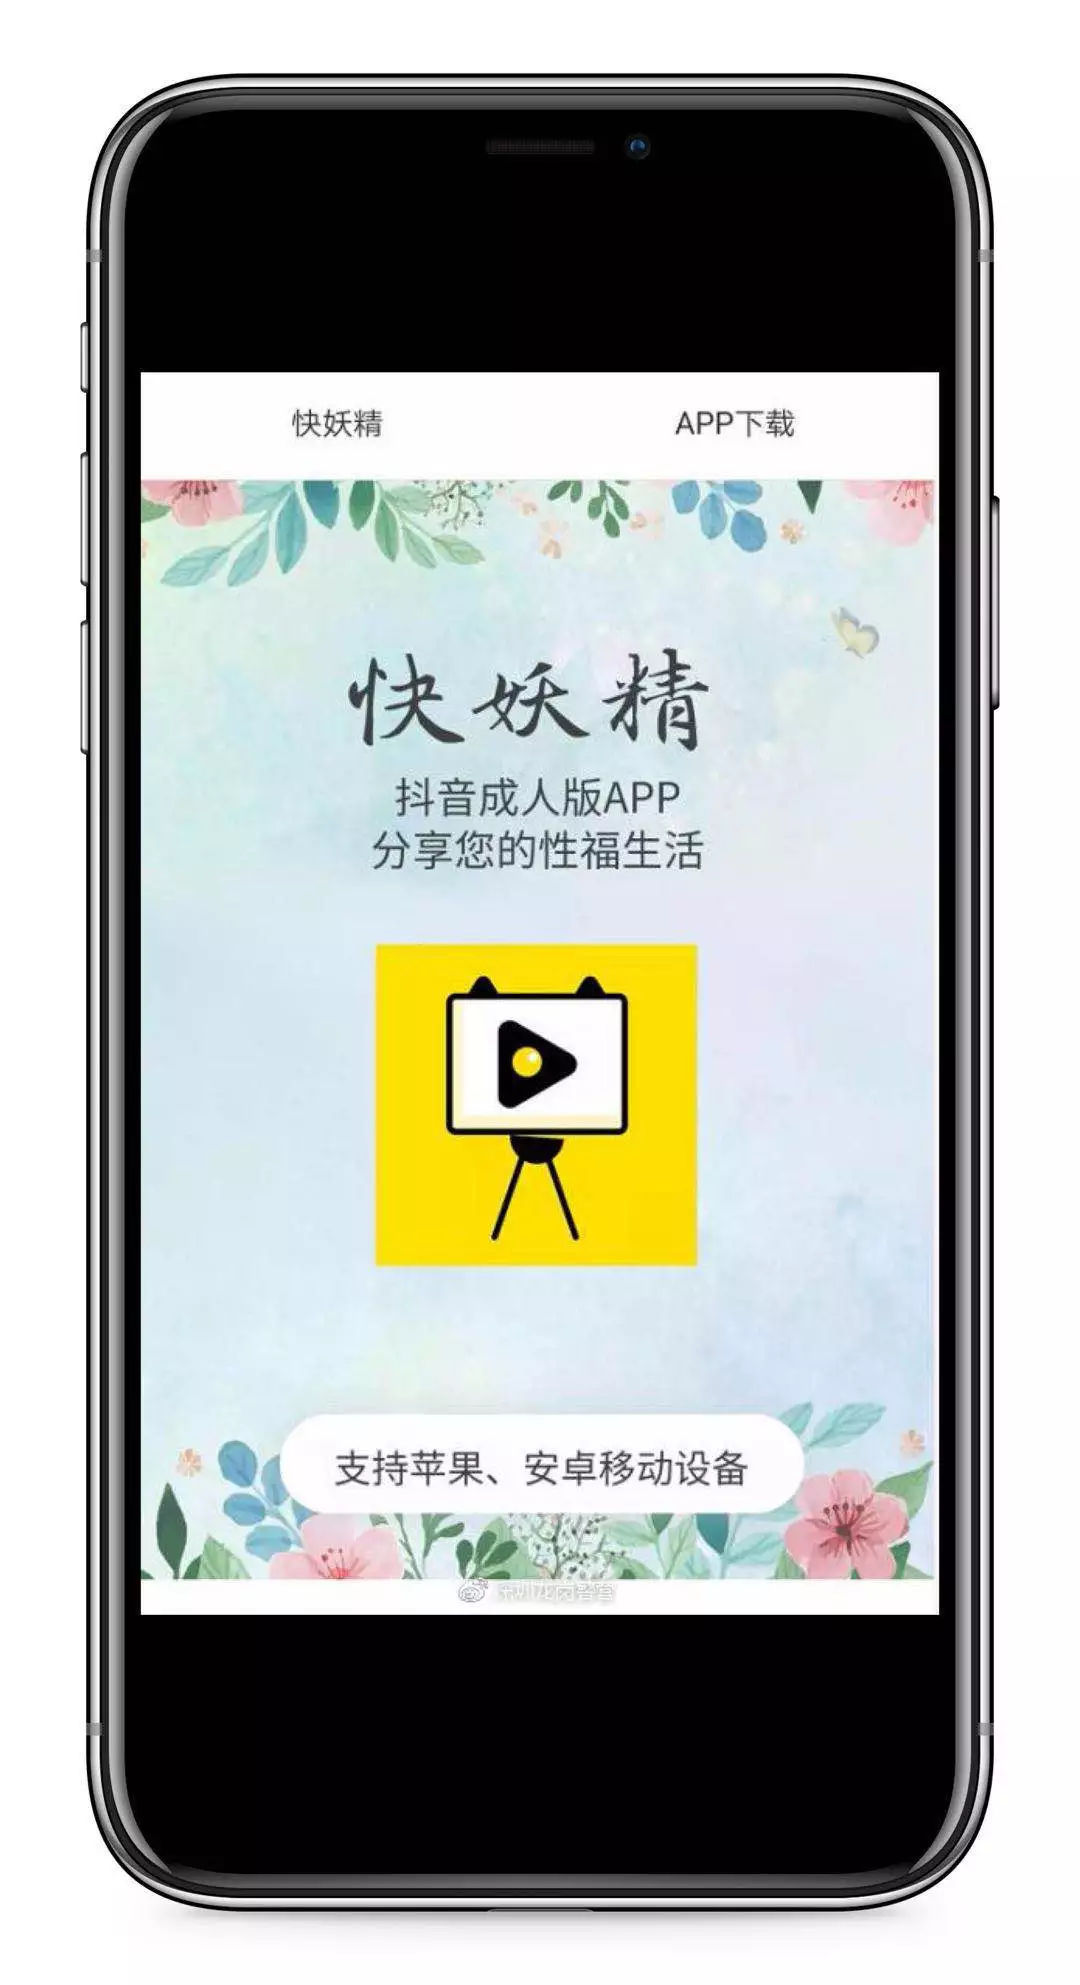 中國最大黃色視頻app成人版抖音快妖精全網下架